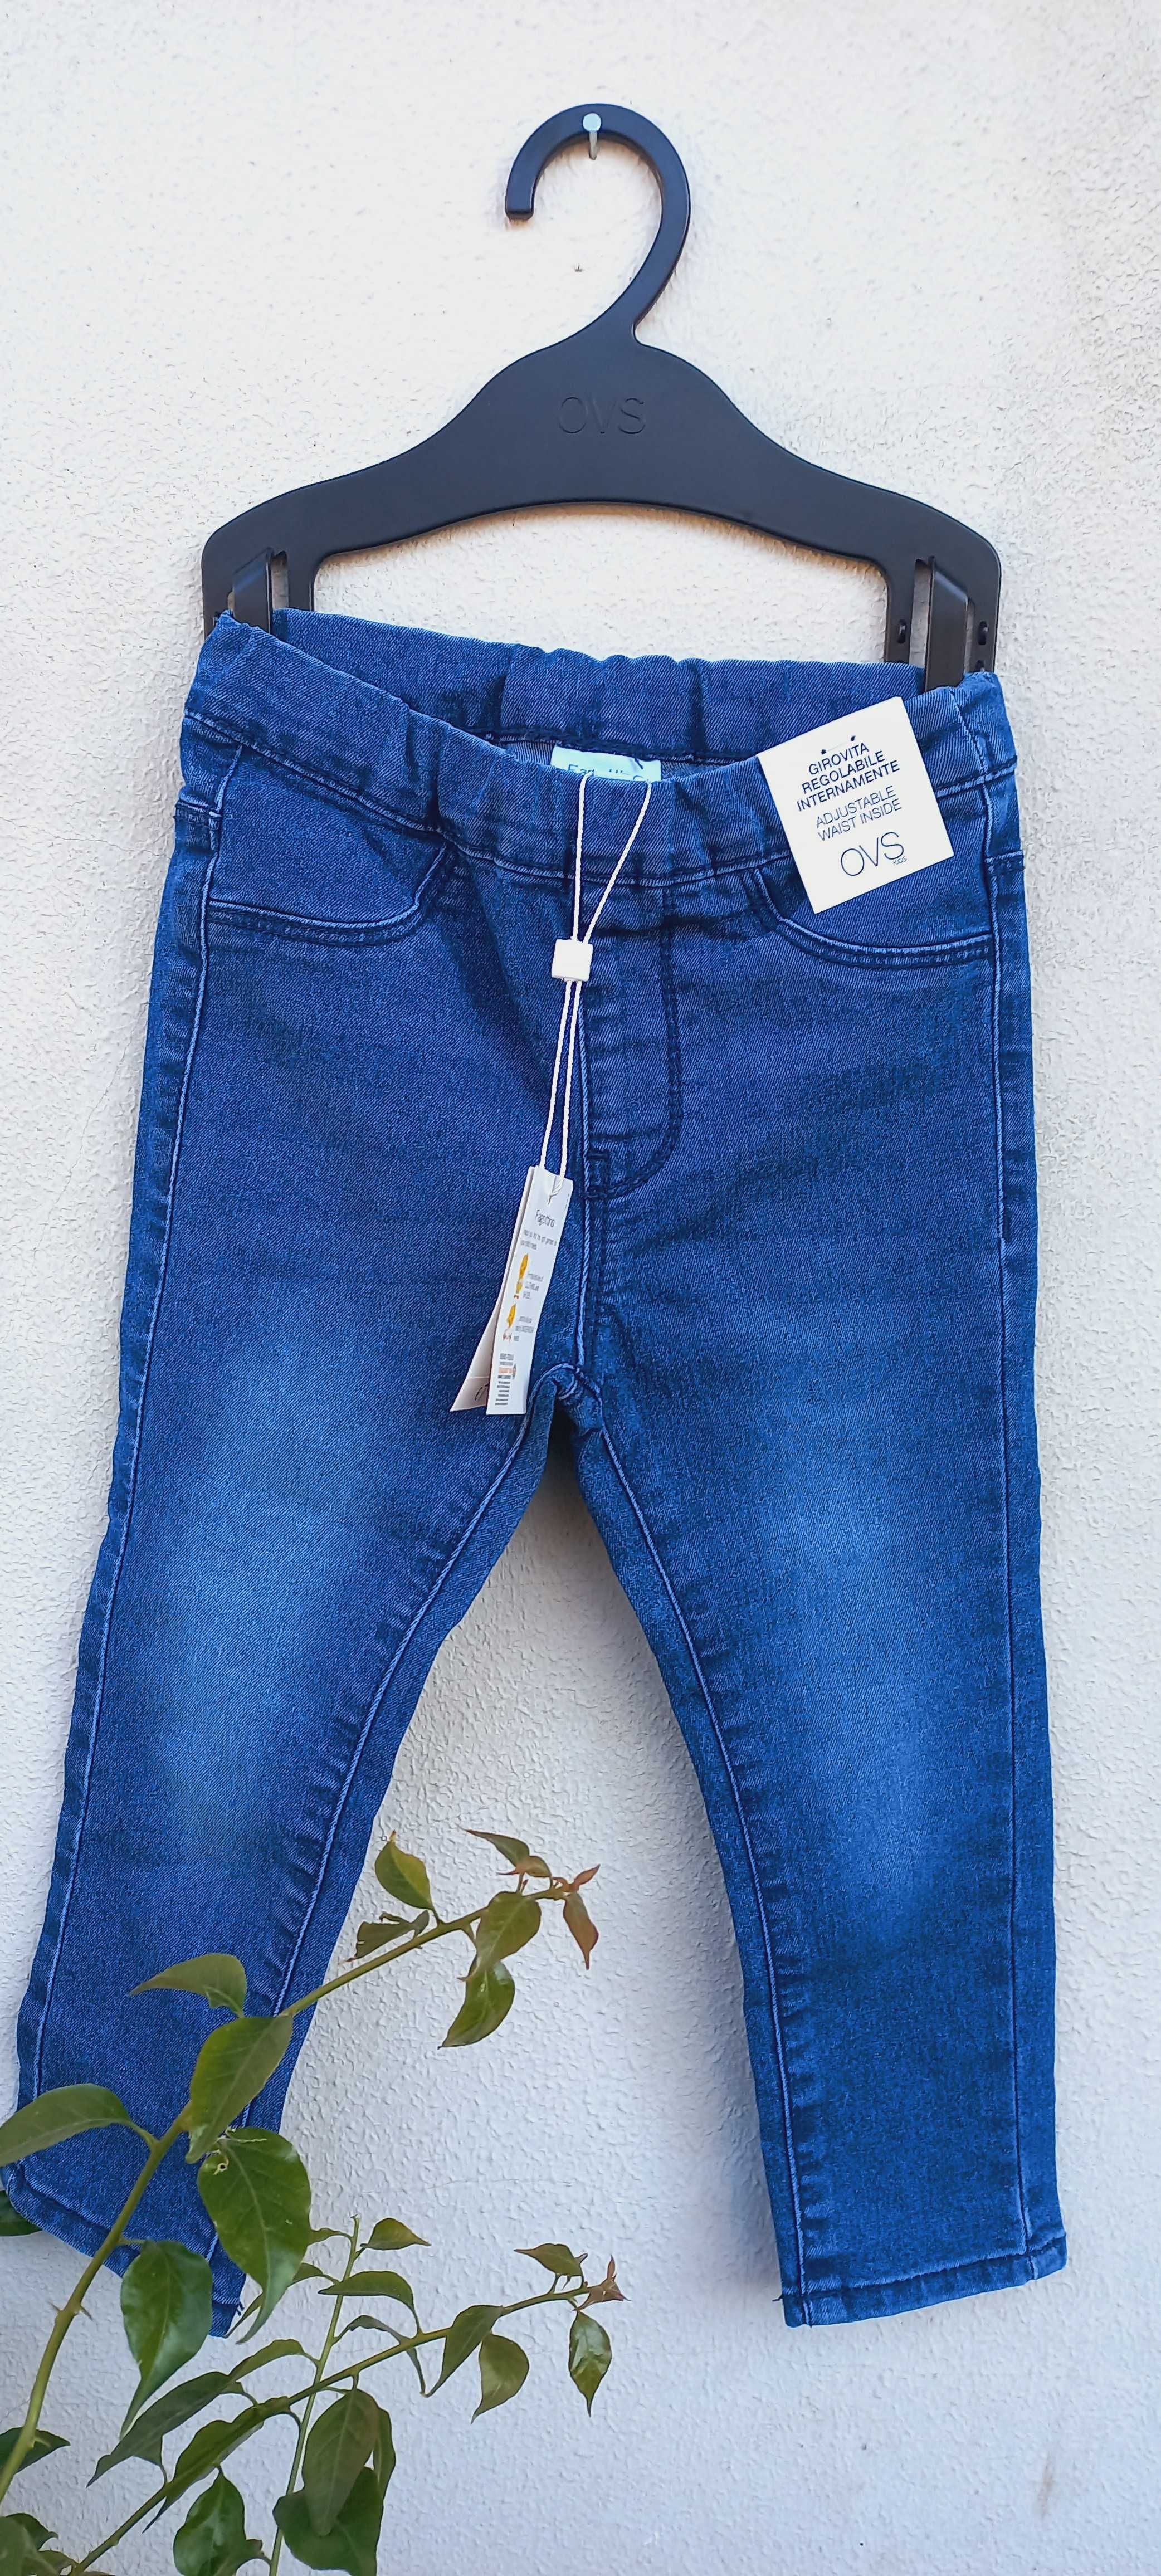 Дитячий одяг штани джинси 3 р для малечі 30-36 місяців нове